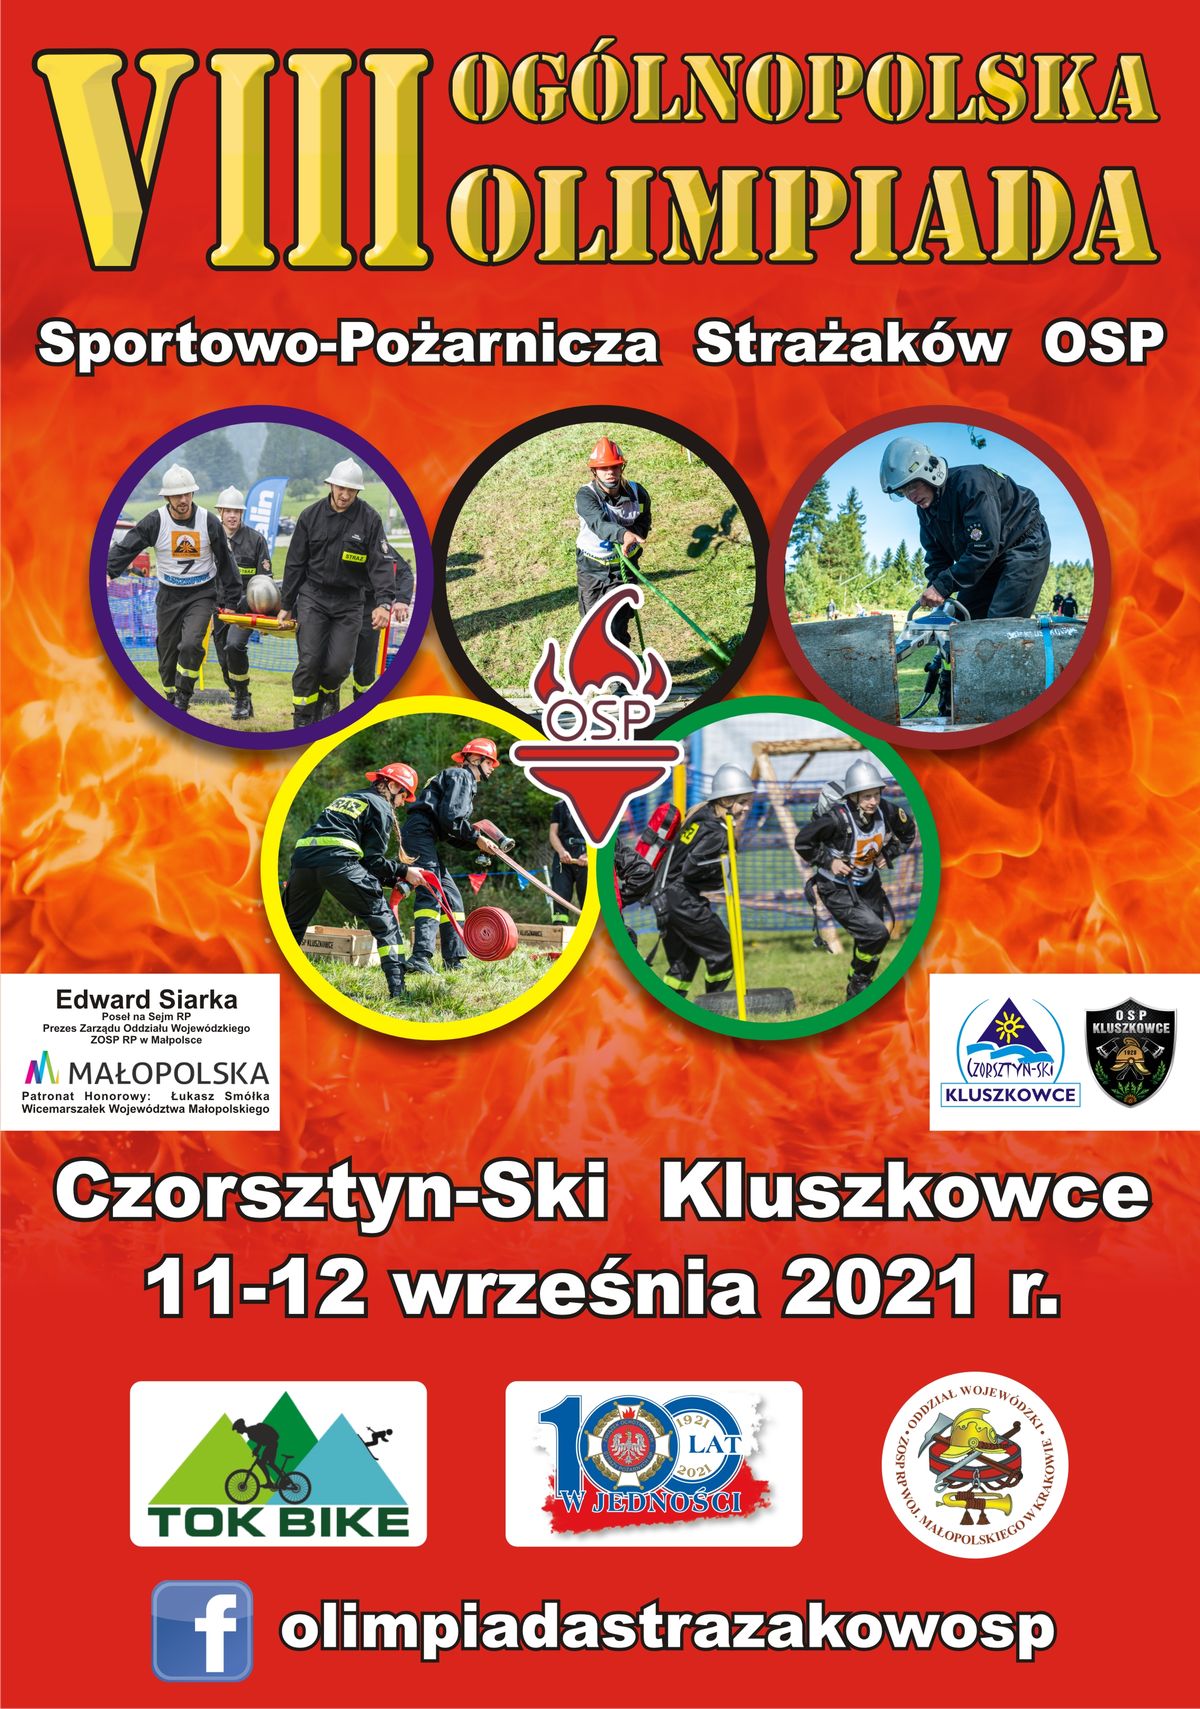 Ruszyły zapisy do Ogólnopolskiej Olimpiady Sportowo-Pożarniczej Strażaków OSP